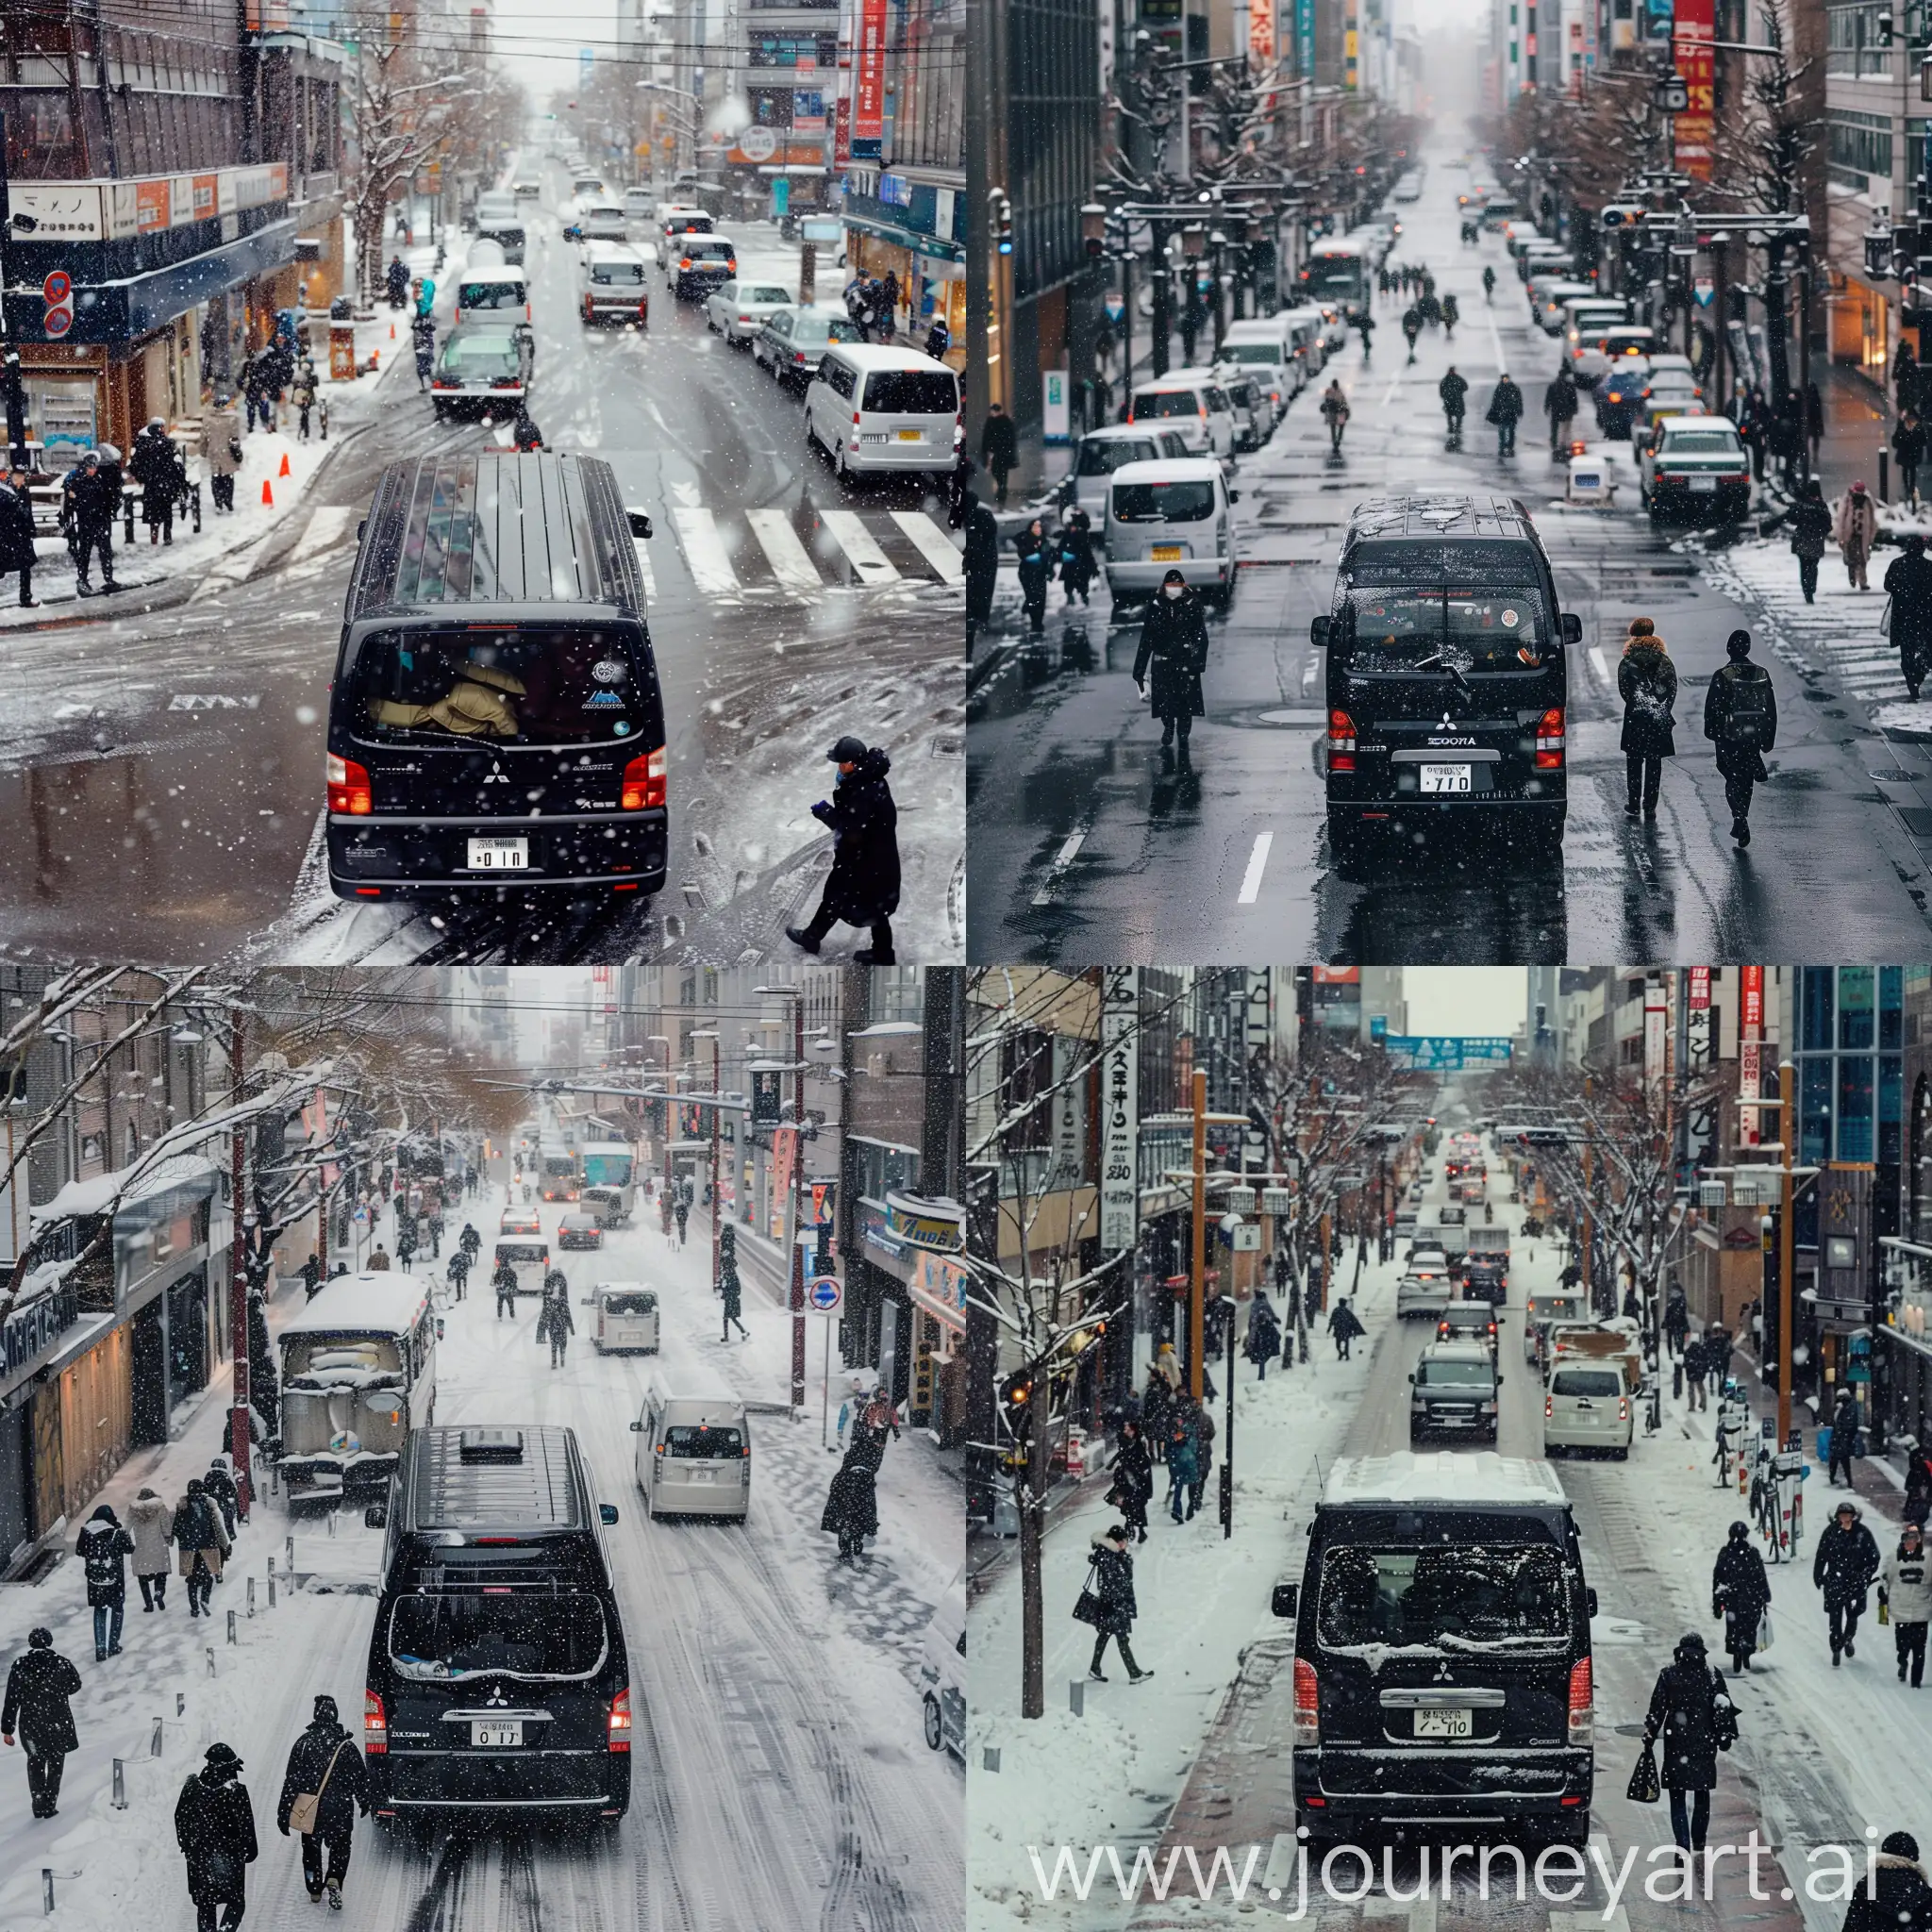 Snowy-Sapporo-Street-Scene-with-Black-Mitsubishi-Delica-Van